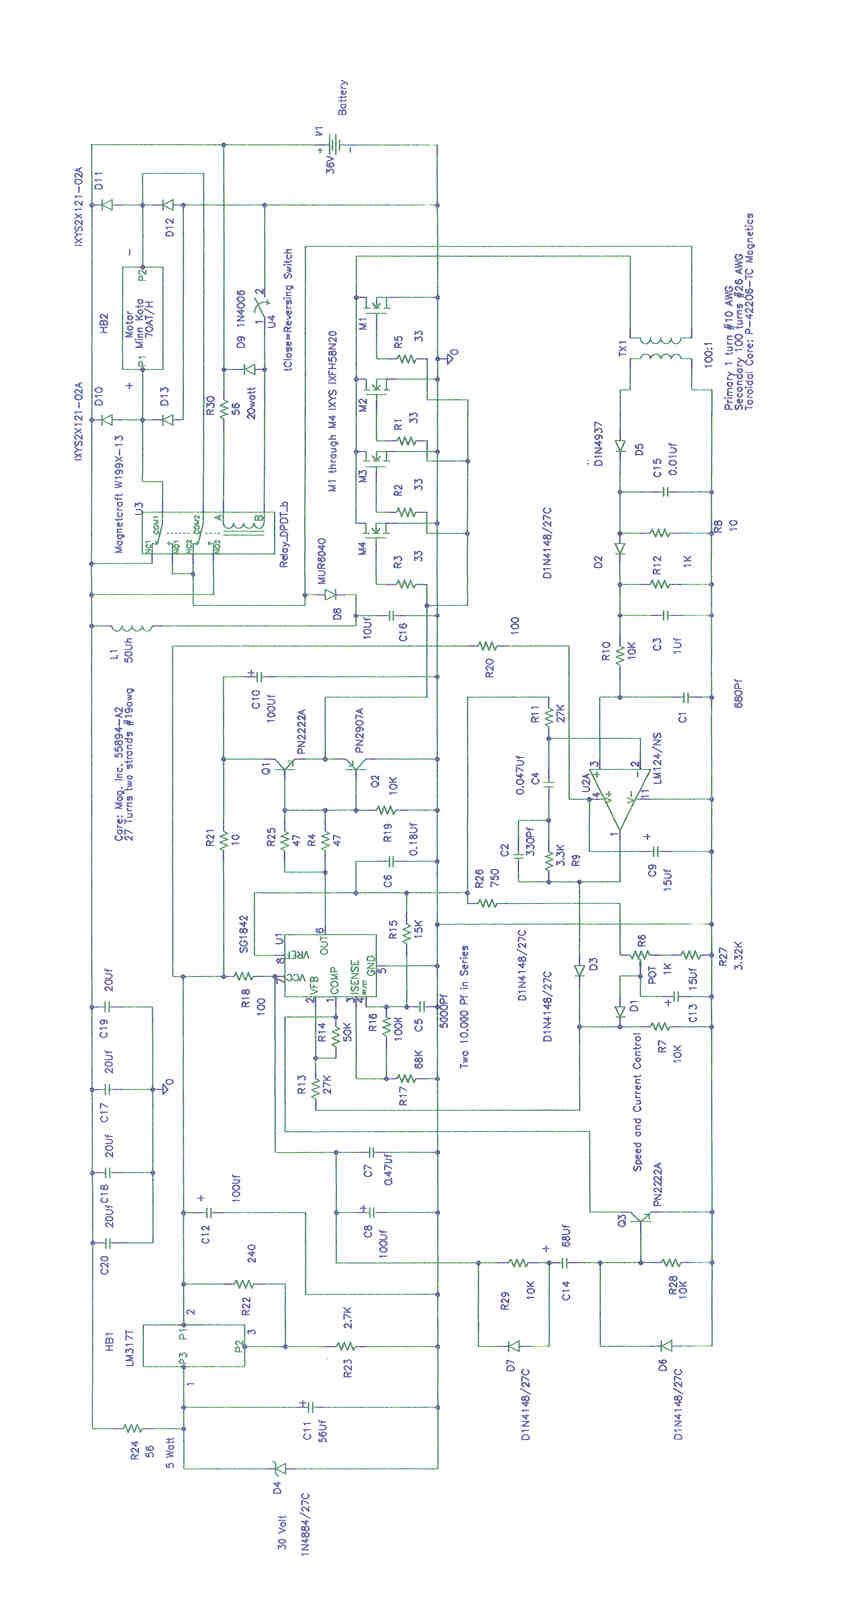 motor controller schematic